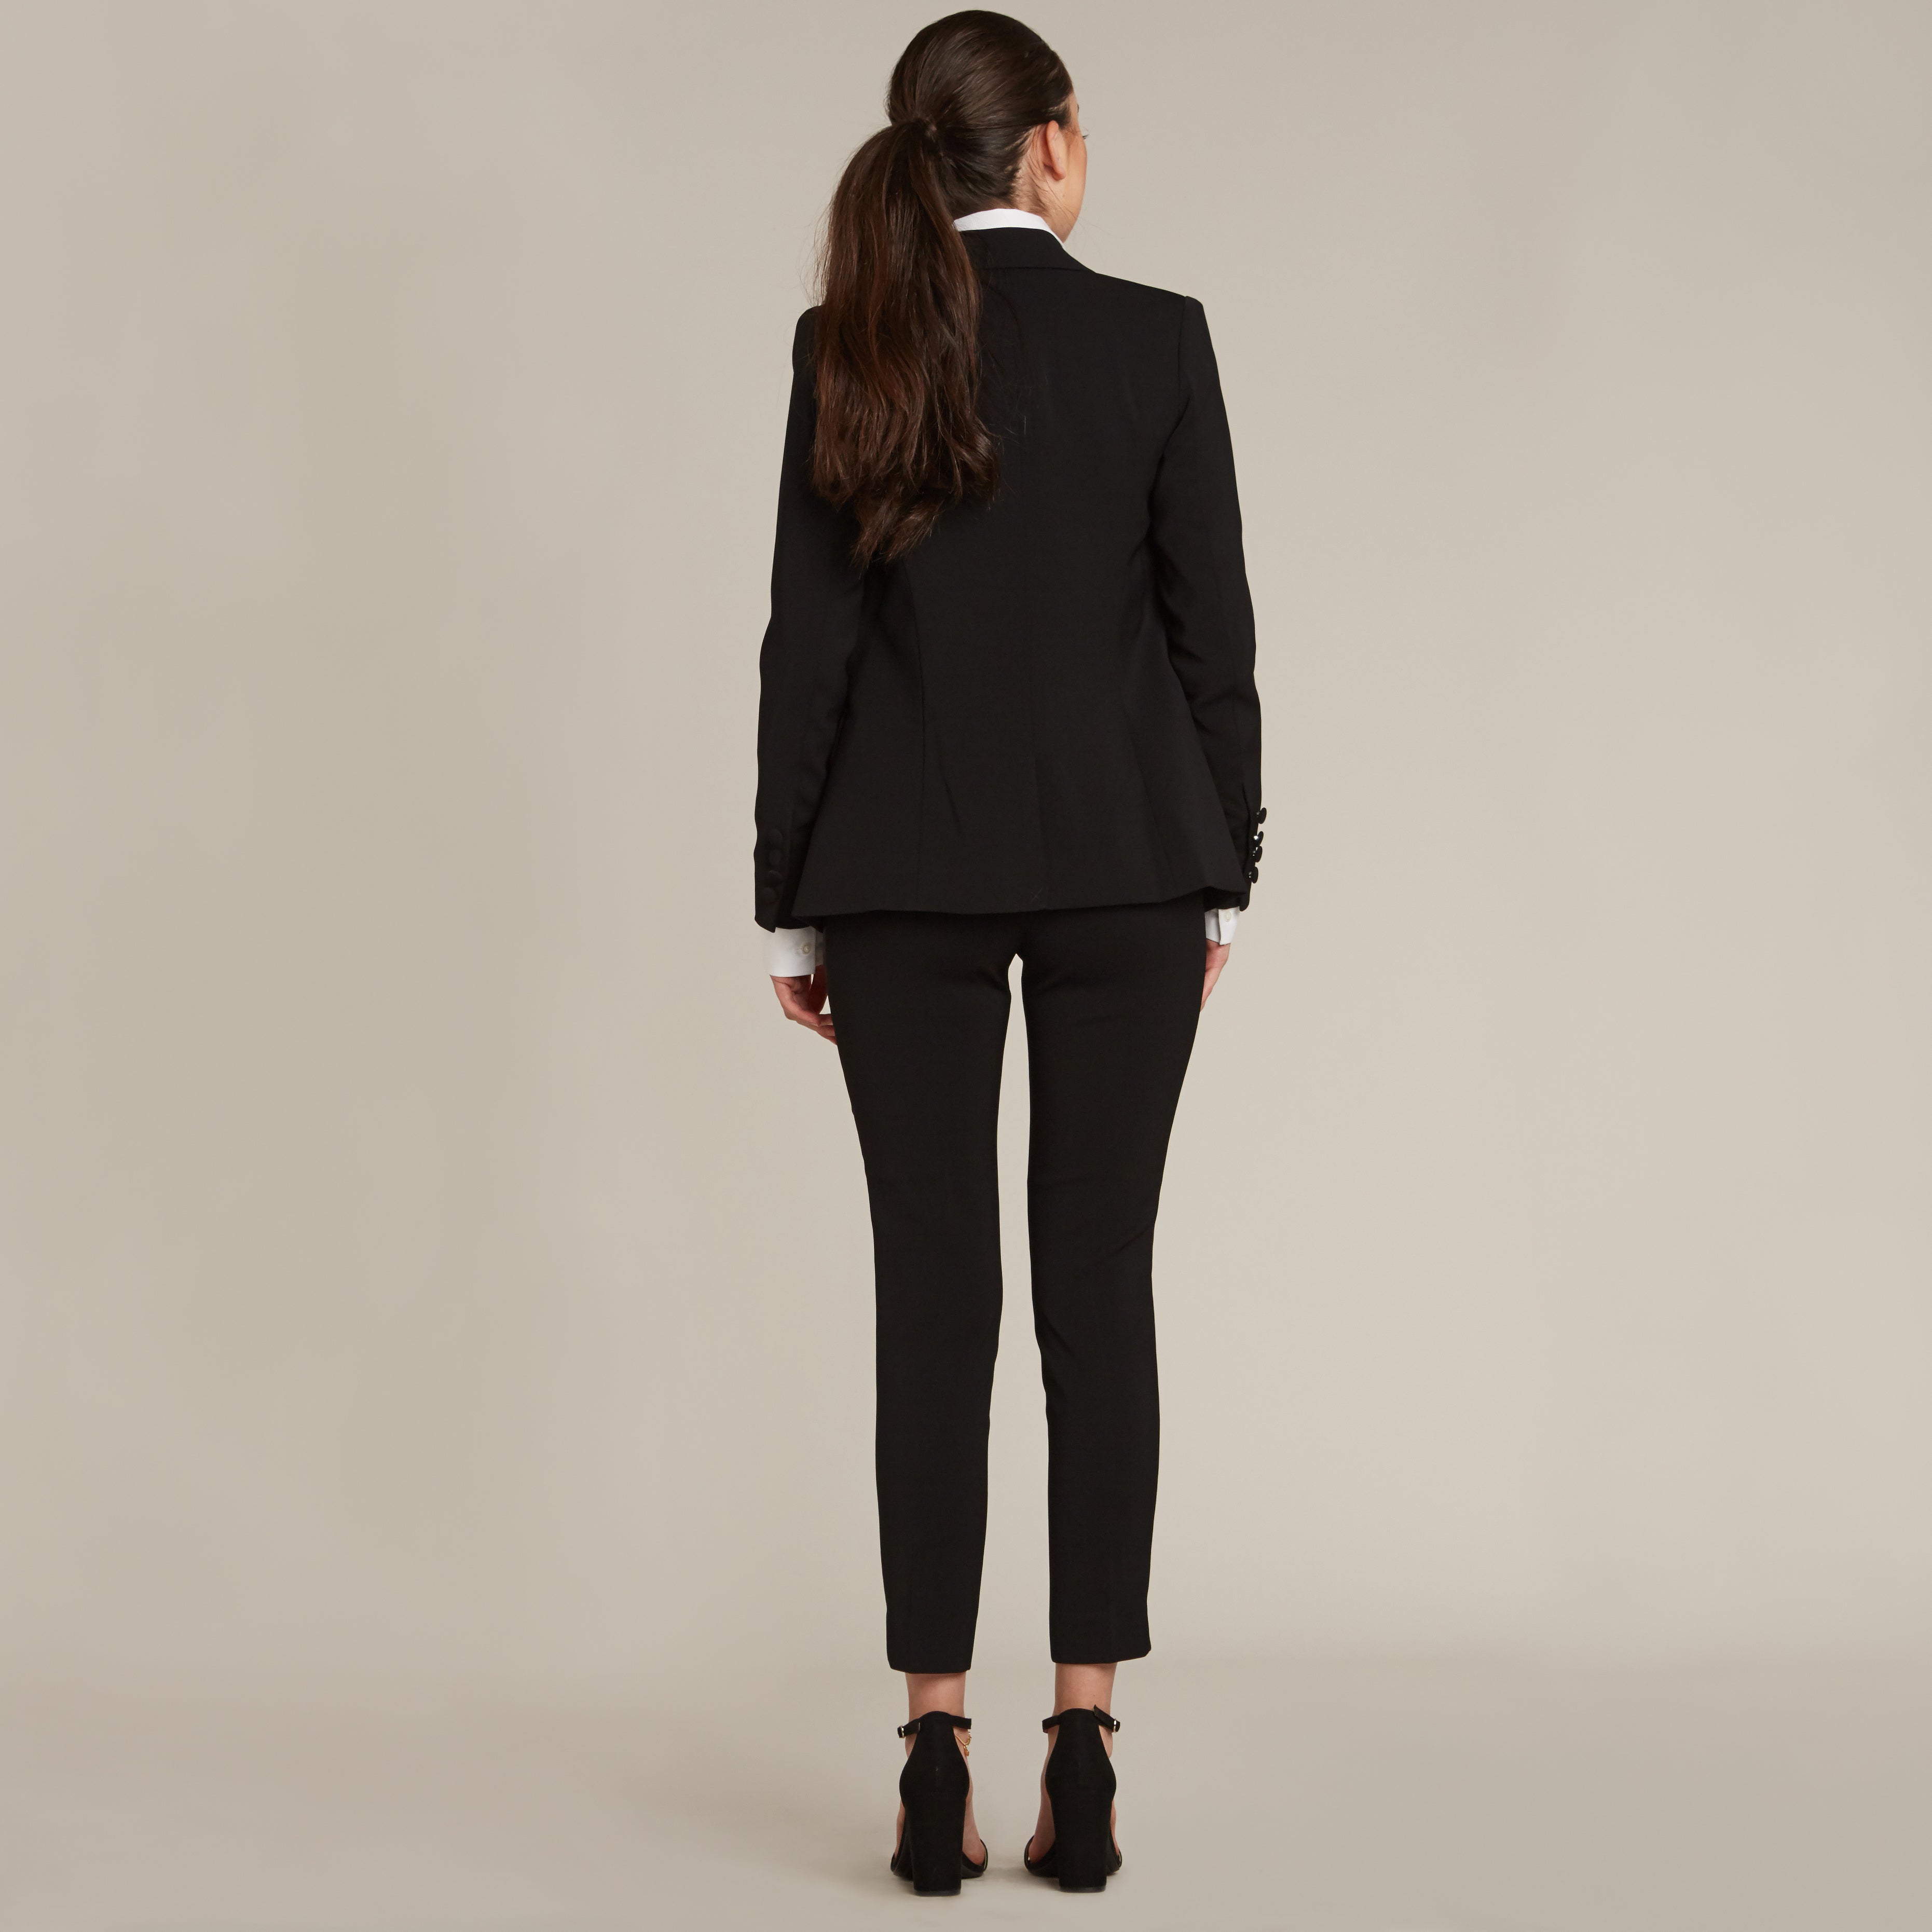 Women's Tuxedo Suits Black & White  Little Black Tux – LITTLE BLACK TUX